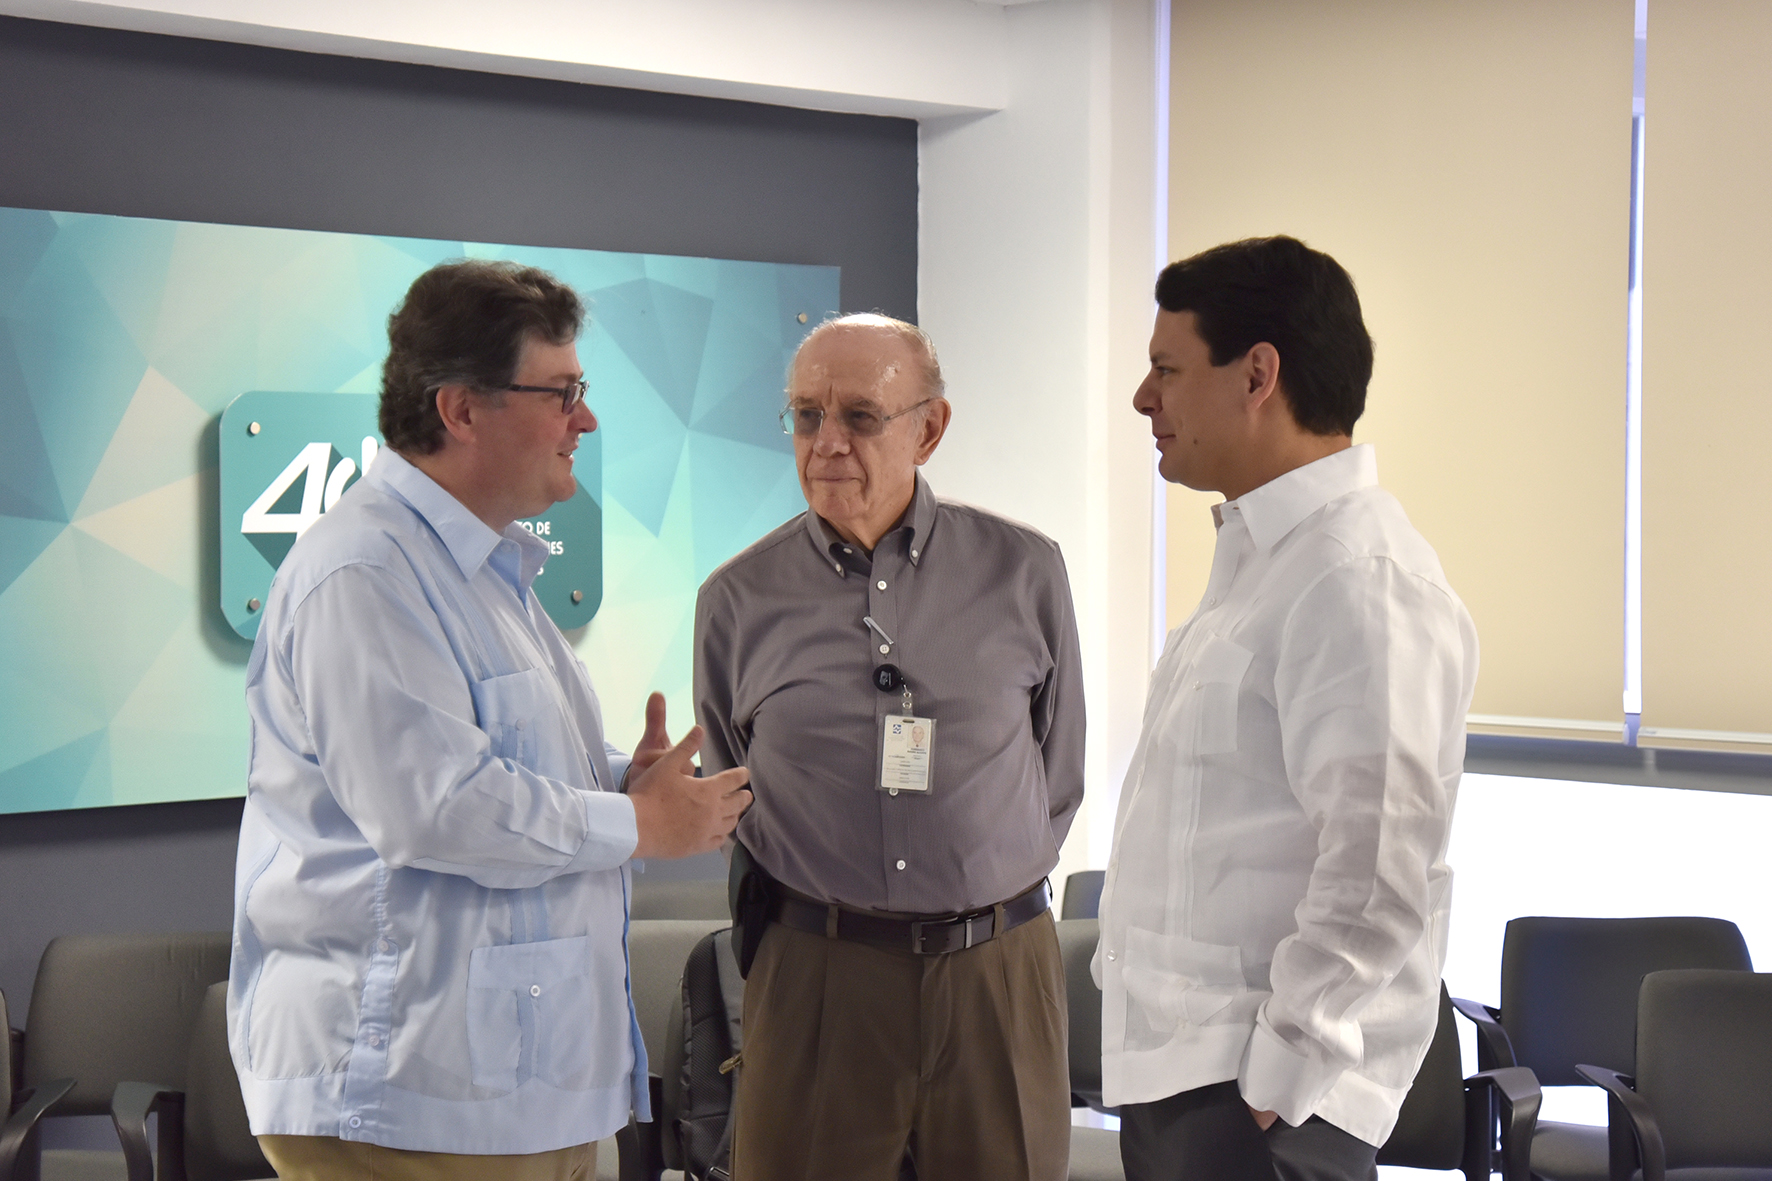 Durante la visita, el Doctor Arjona resaltó el cambio y el proceso de evolución y transición que se está llevando a cabo en el Instituto.